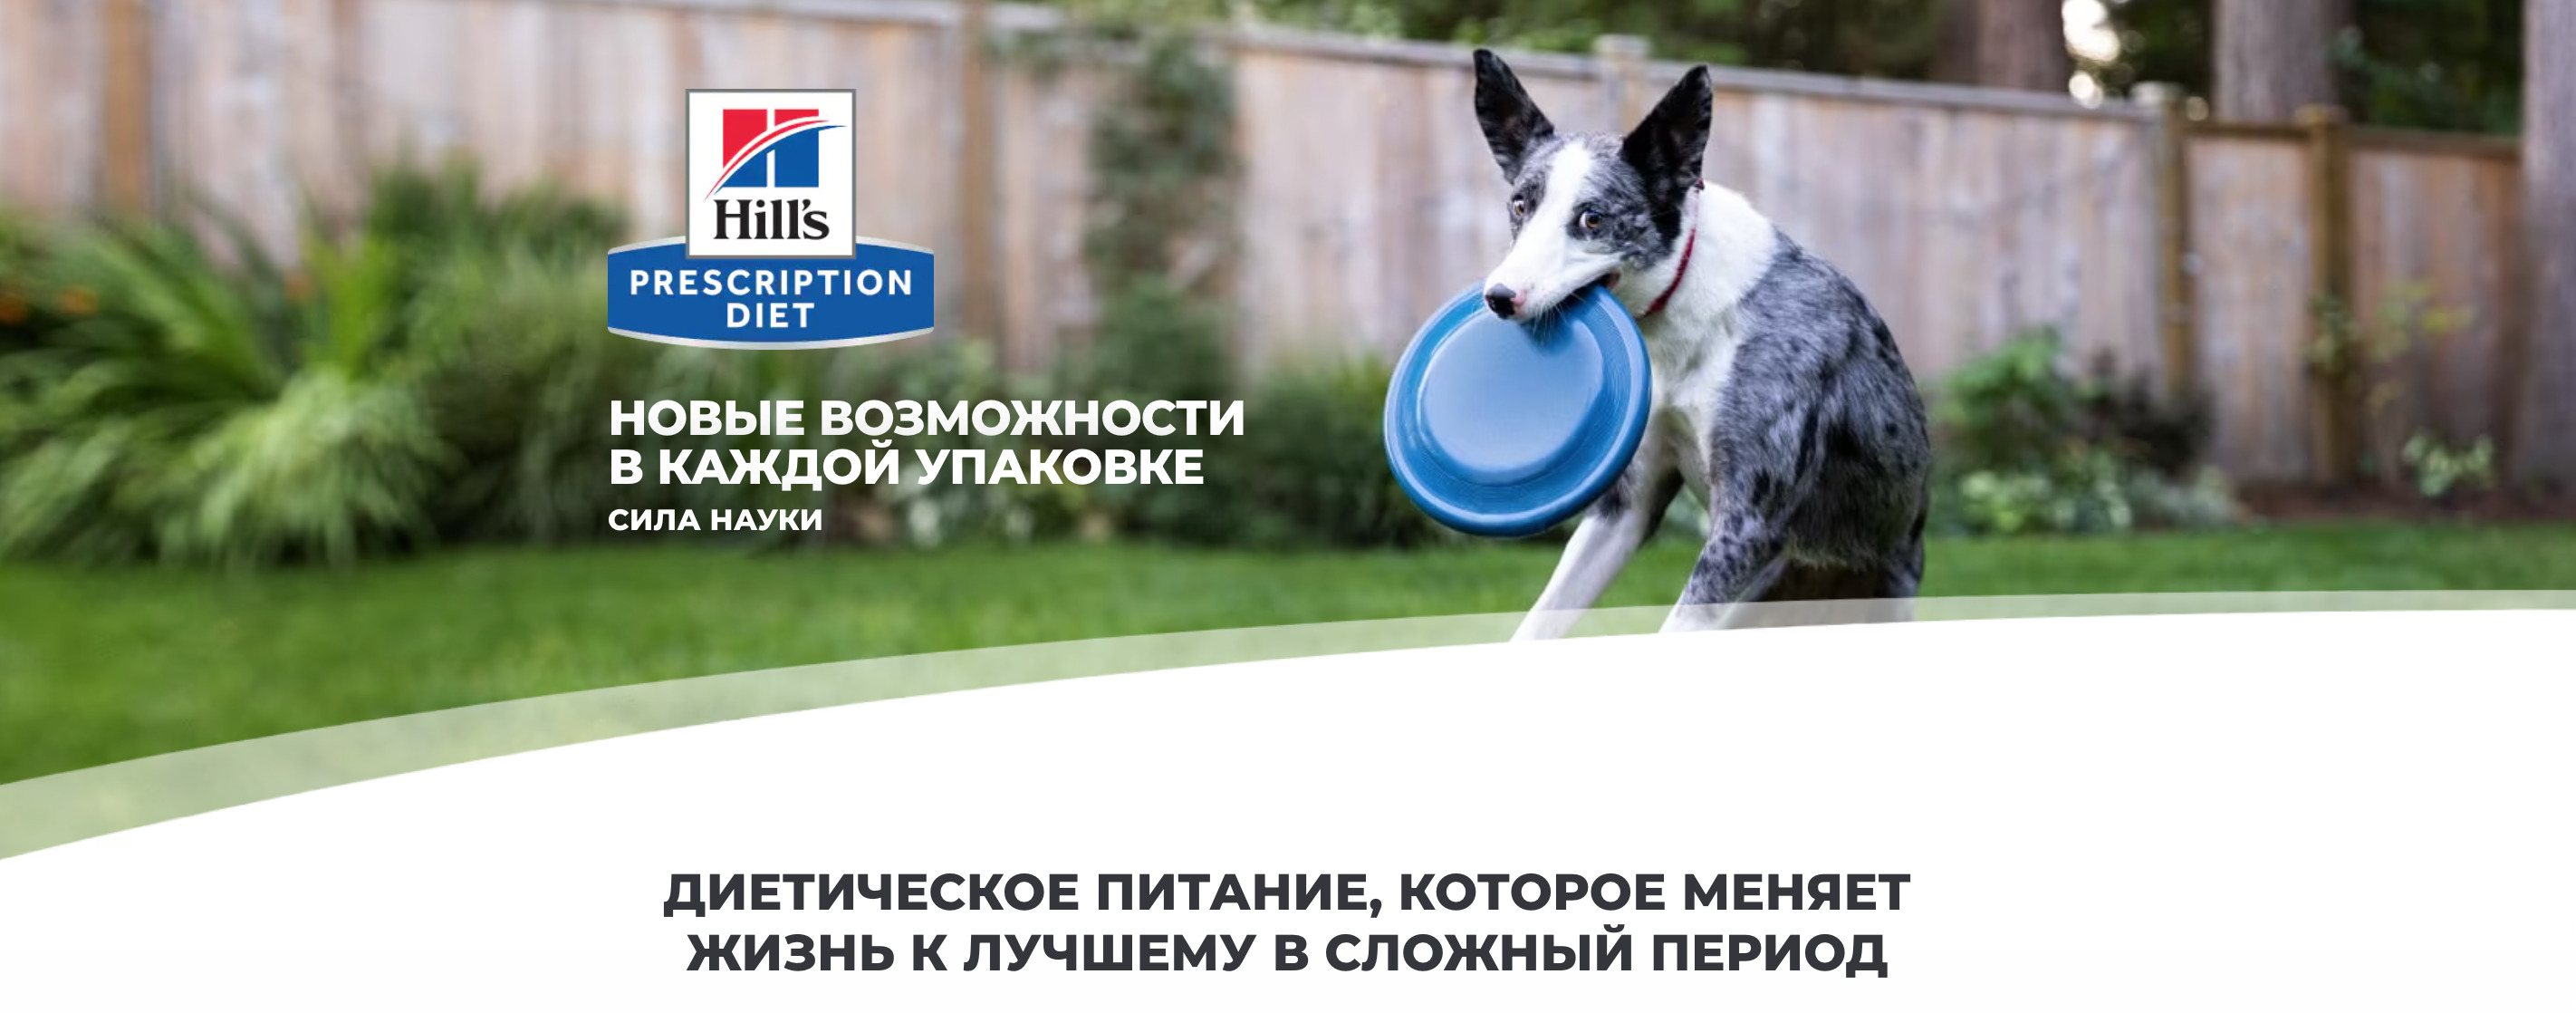 купить Сухие диетические корма для собак Hill's Prescription Diet с бесплатной доставкой в Калининграде